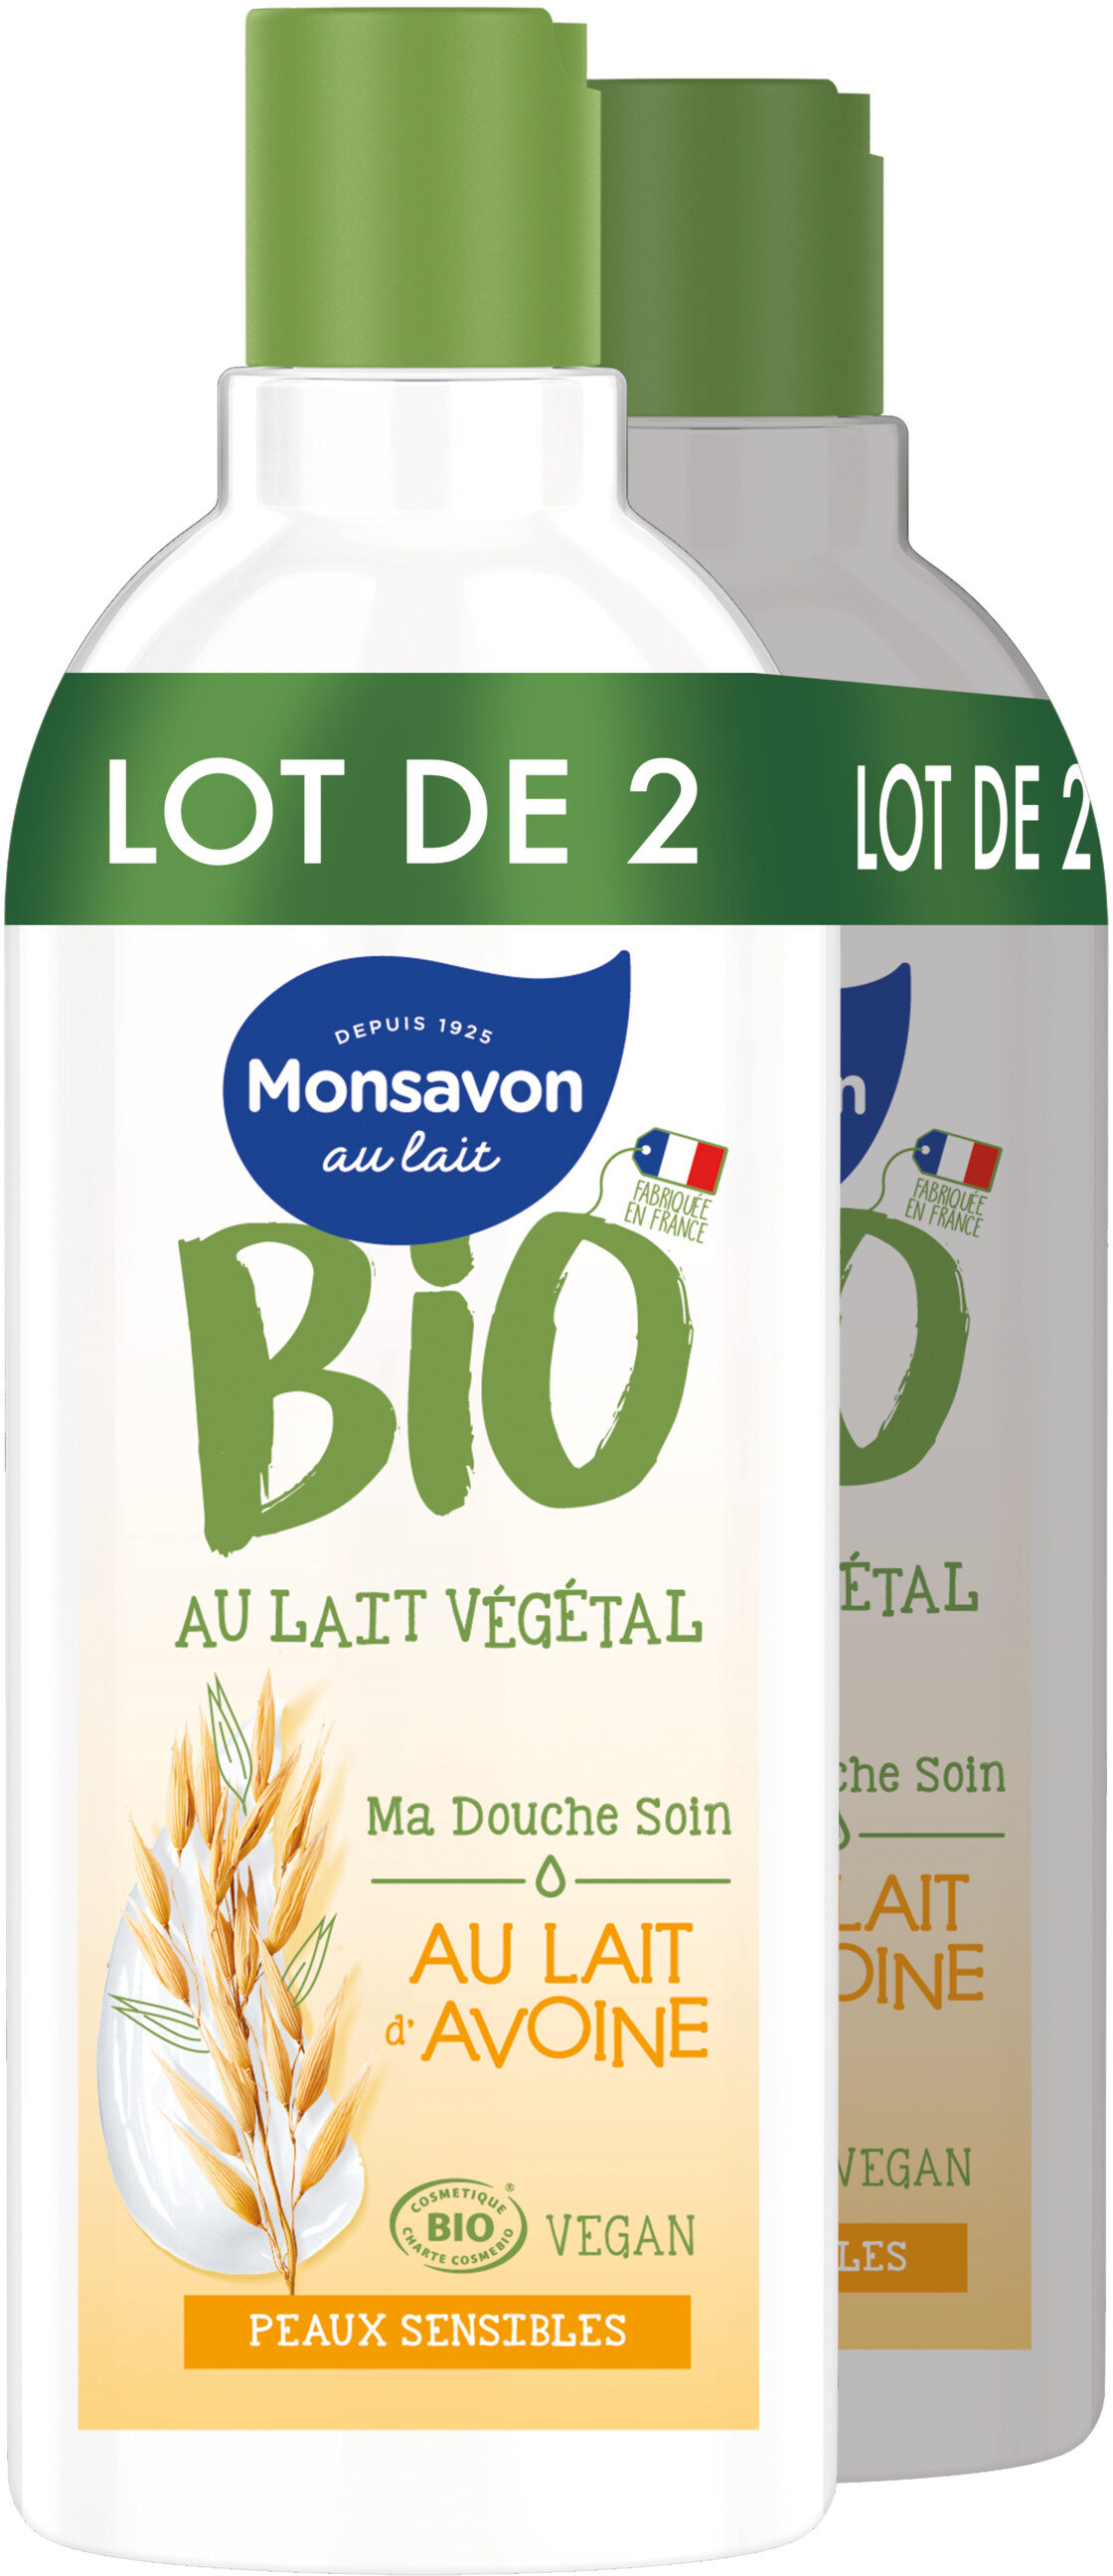 Monsavon Gel Douche Bio Vegan Lait Avoine Lot 2 x 300ml - Product - fr